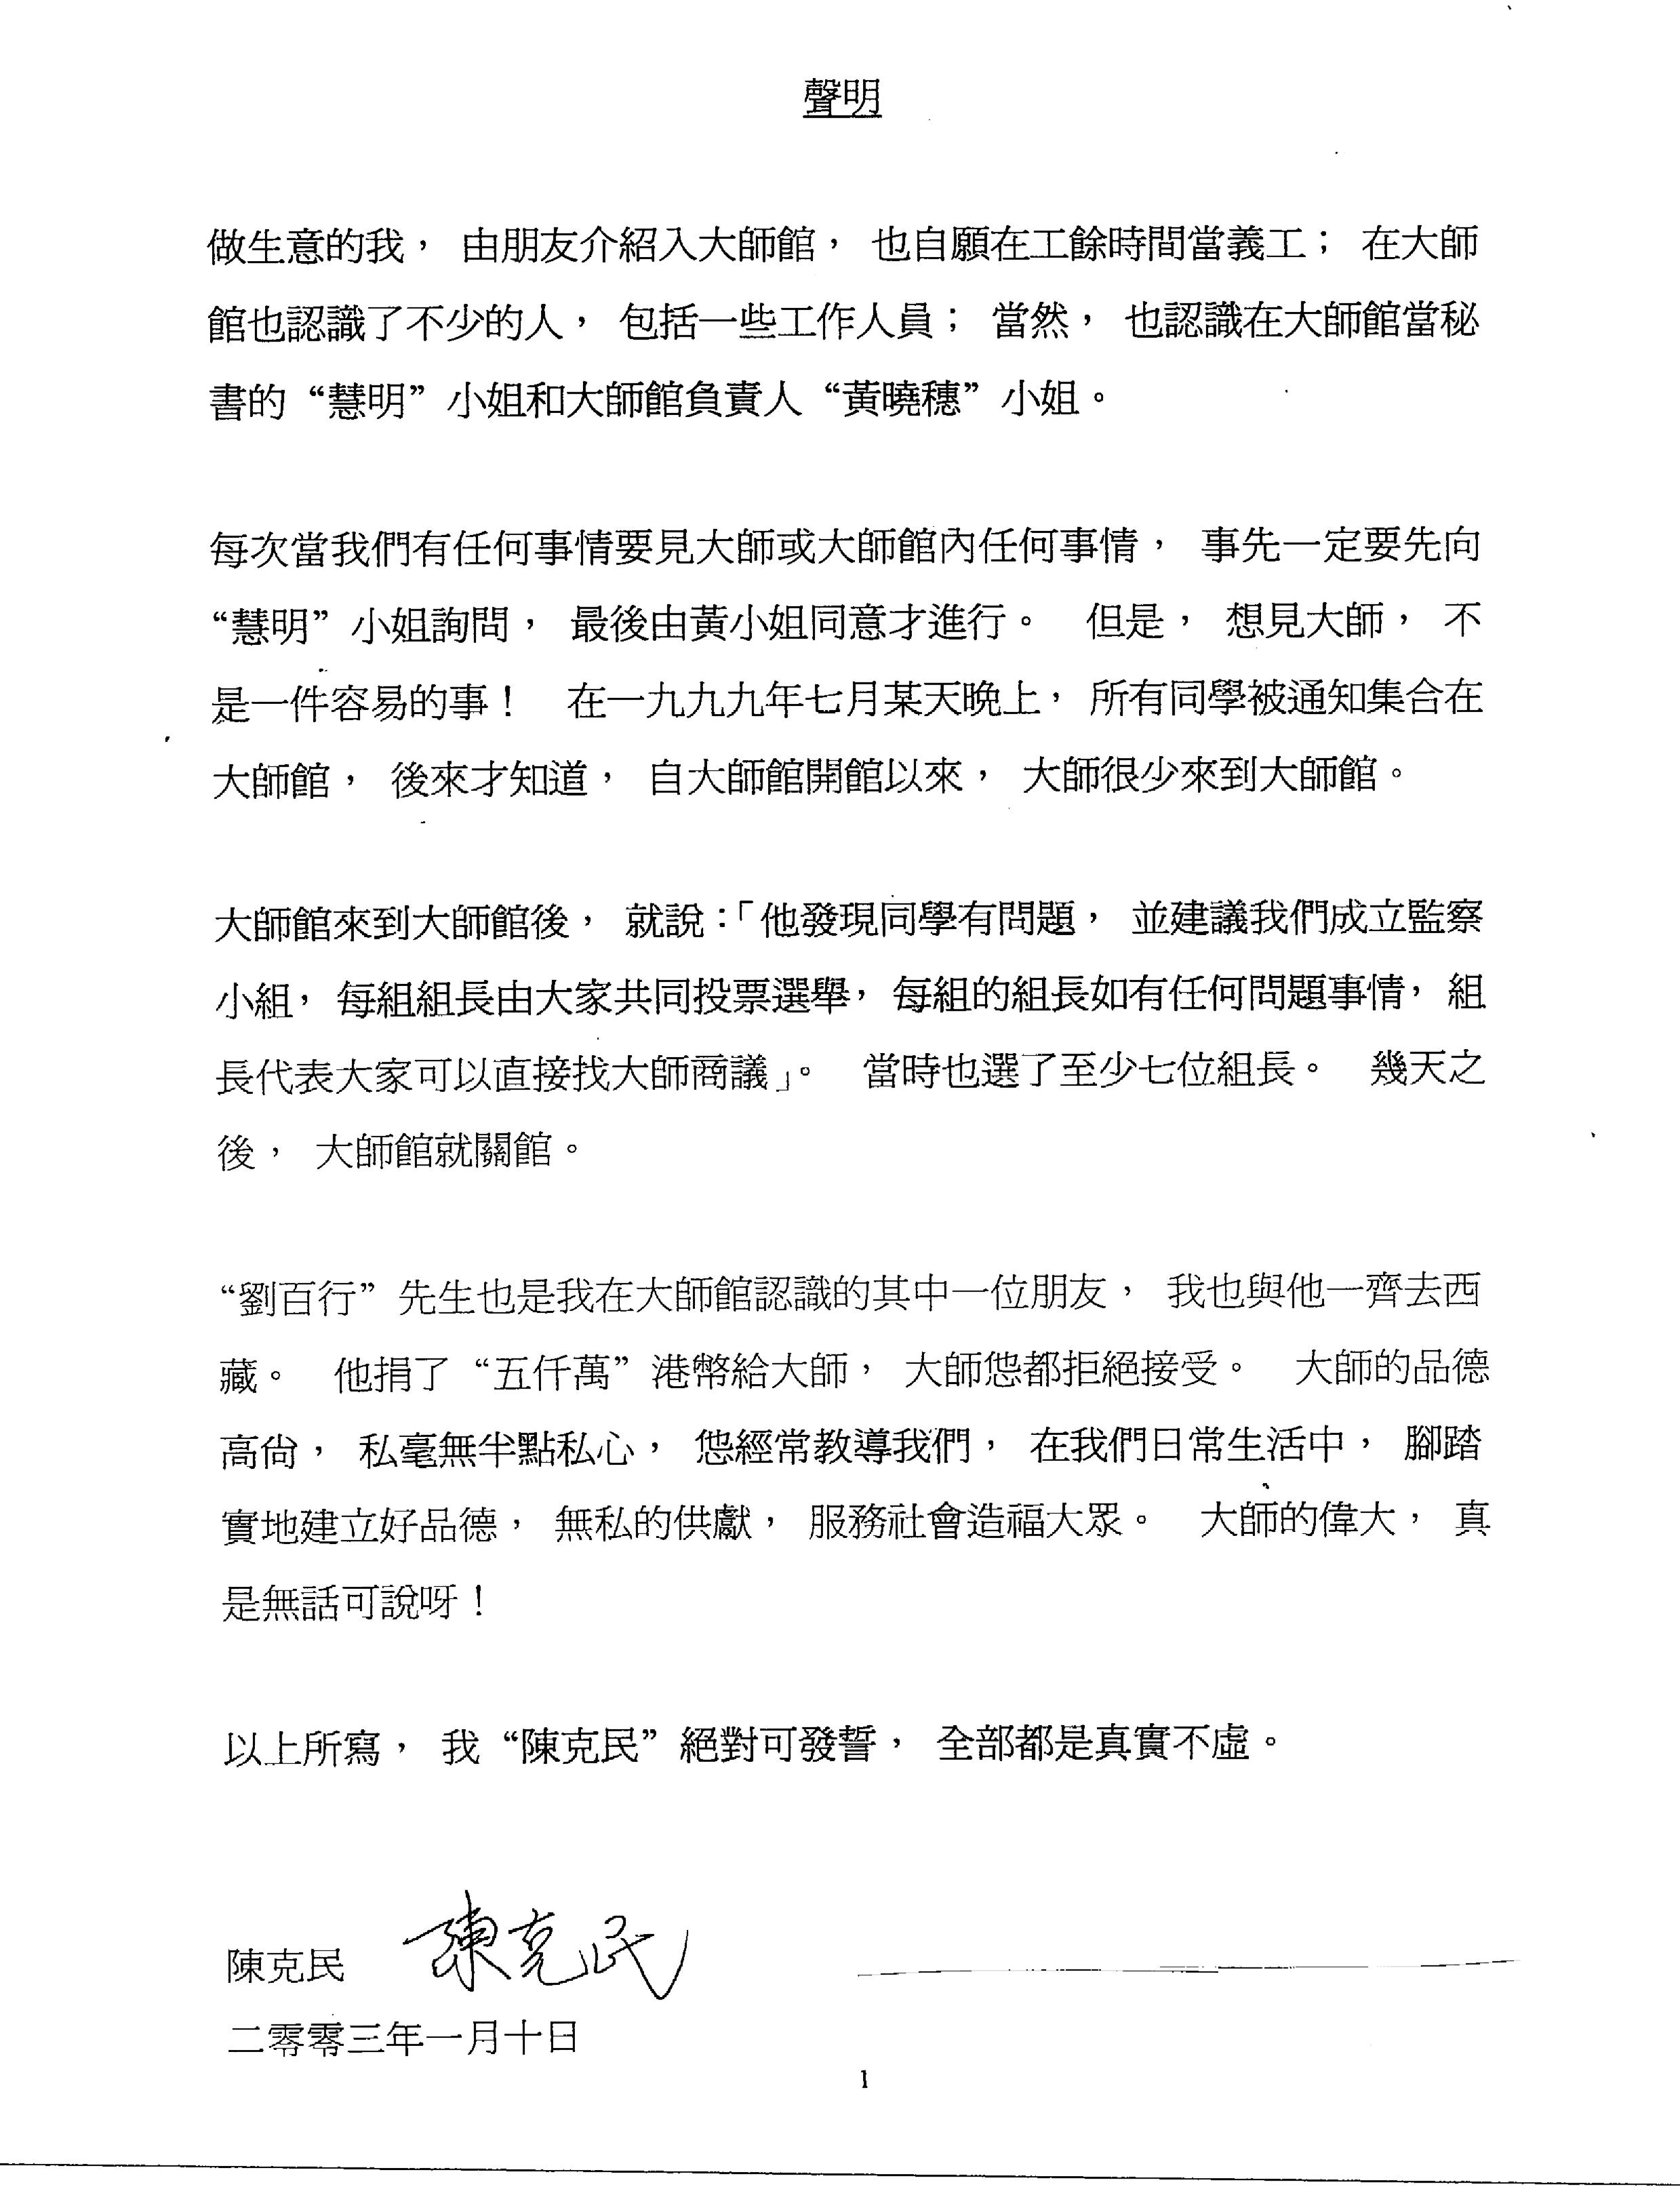 香港法院重判黄晓穗诈骗案 还第三世多杰羌佛清白